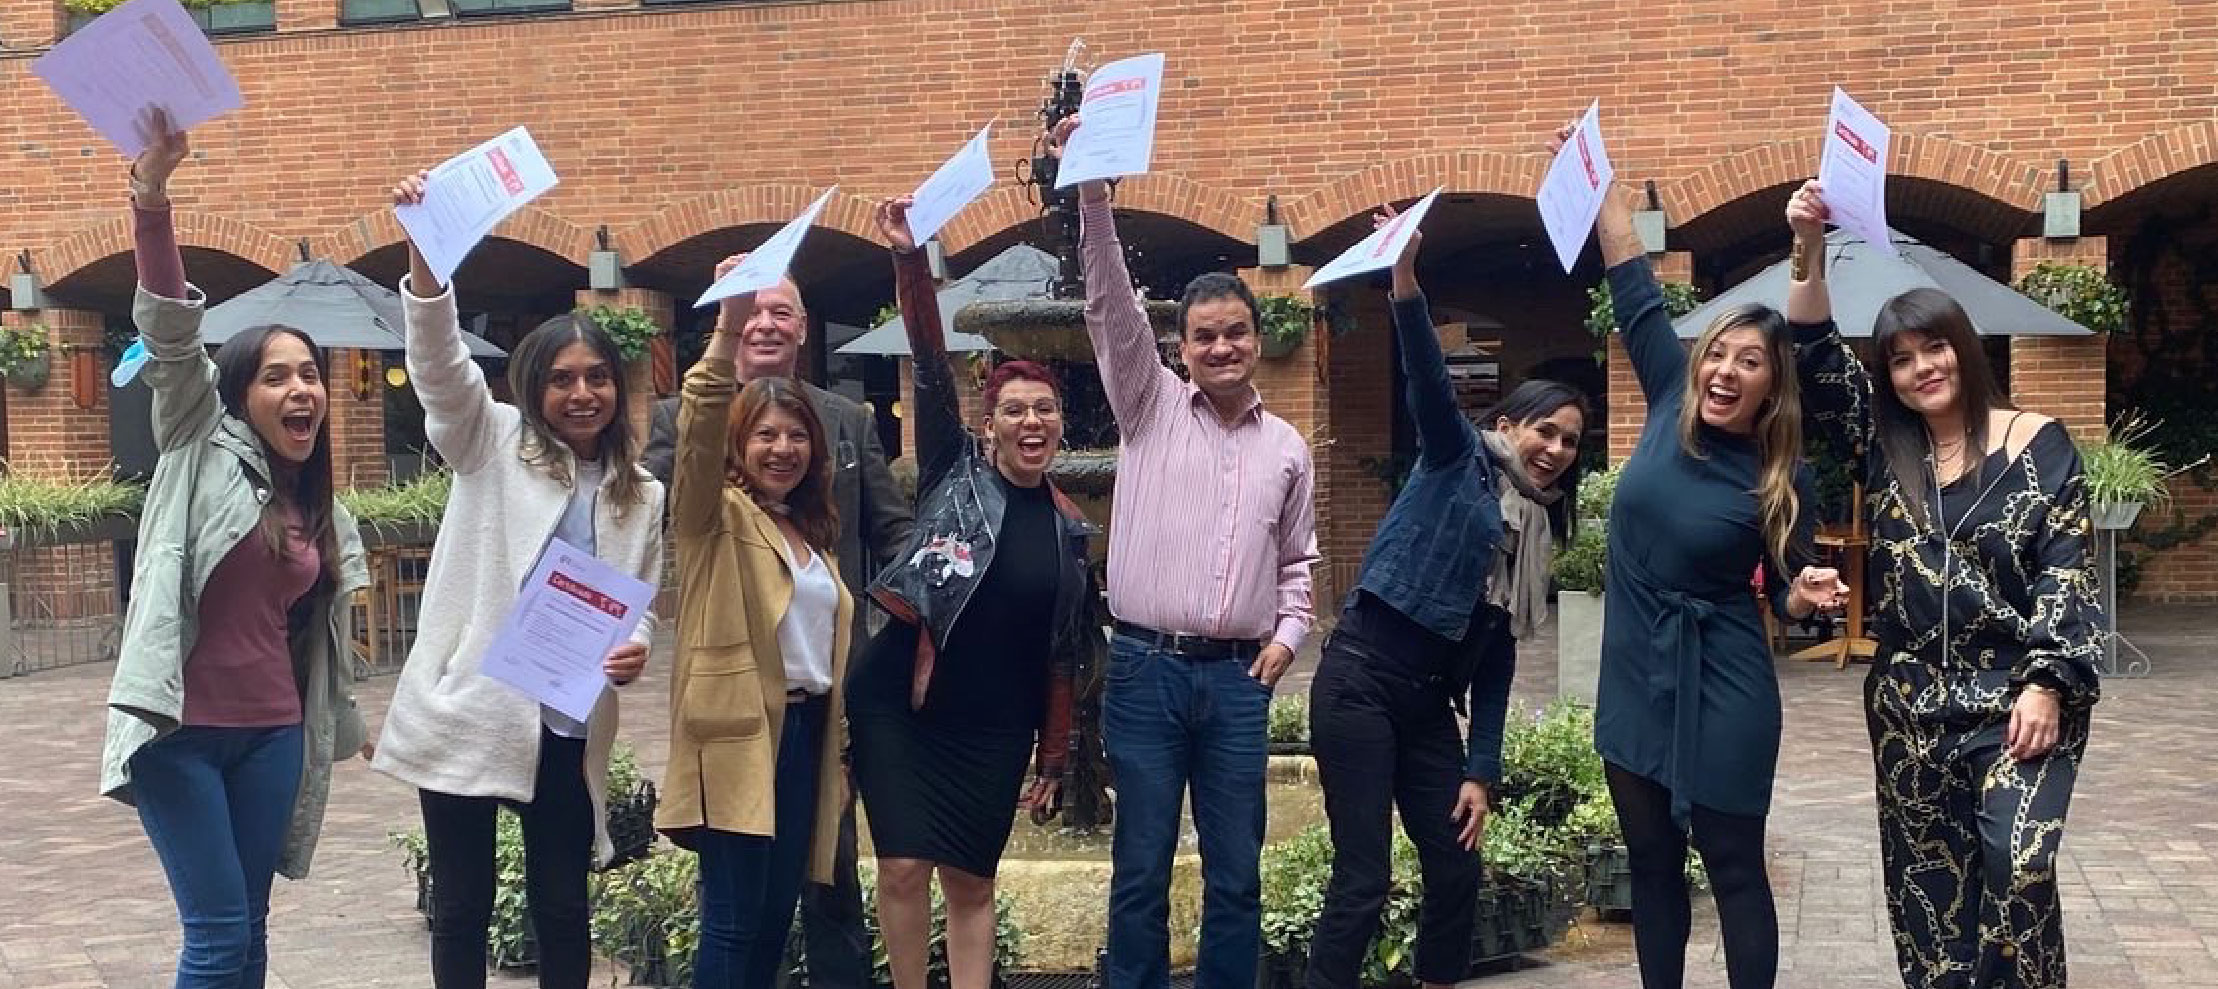 Equipo técnico de APC-Colombia, celebrando ante la cámara con certificados del proceso de consultoría en Cooperación Internacional que realizaron con GIZ